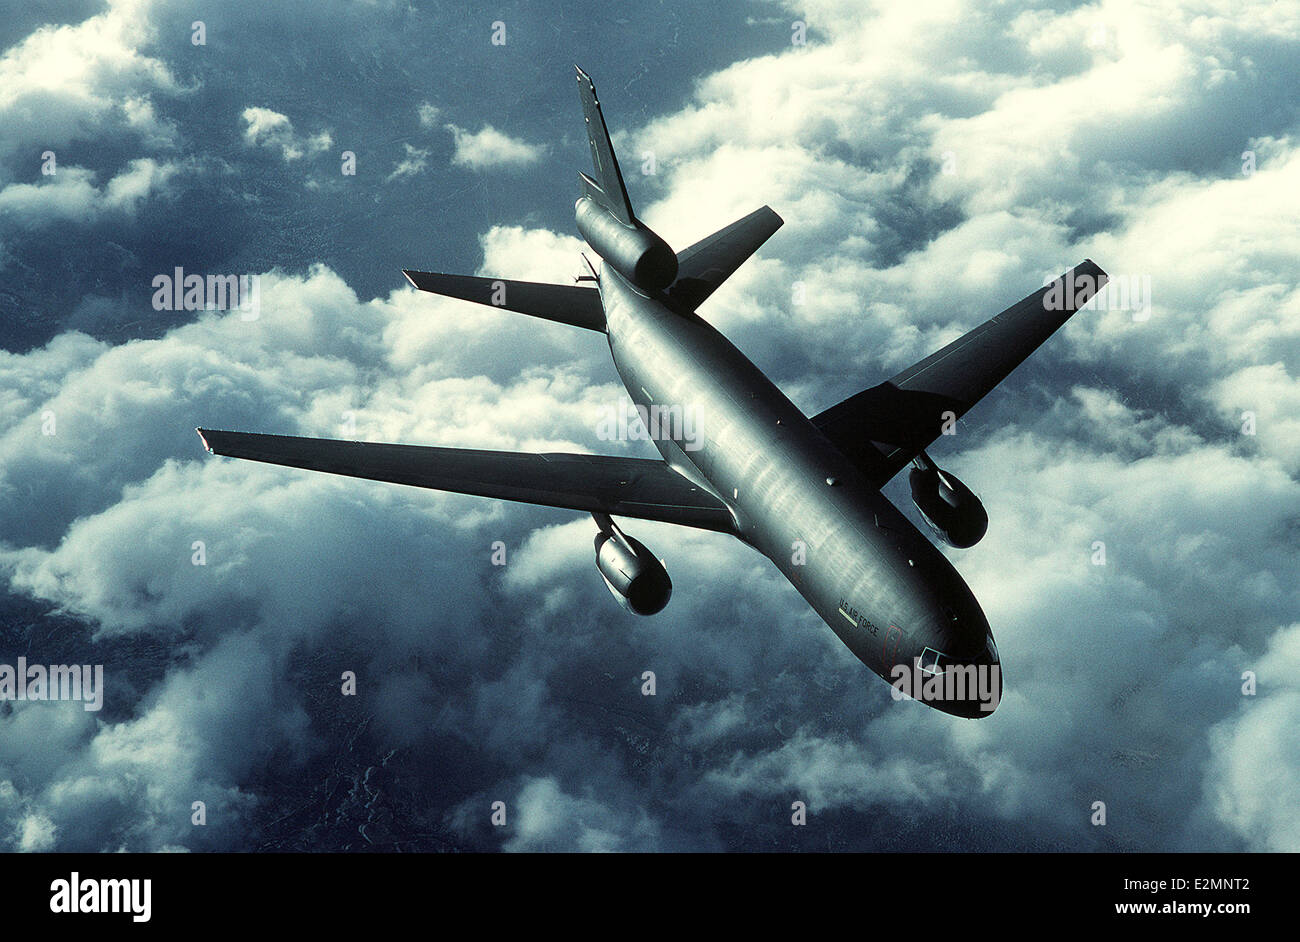 KC-10A Extender aircraft Stock Photo